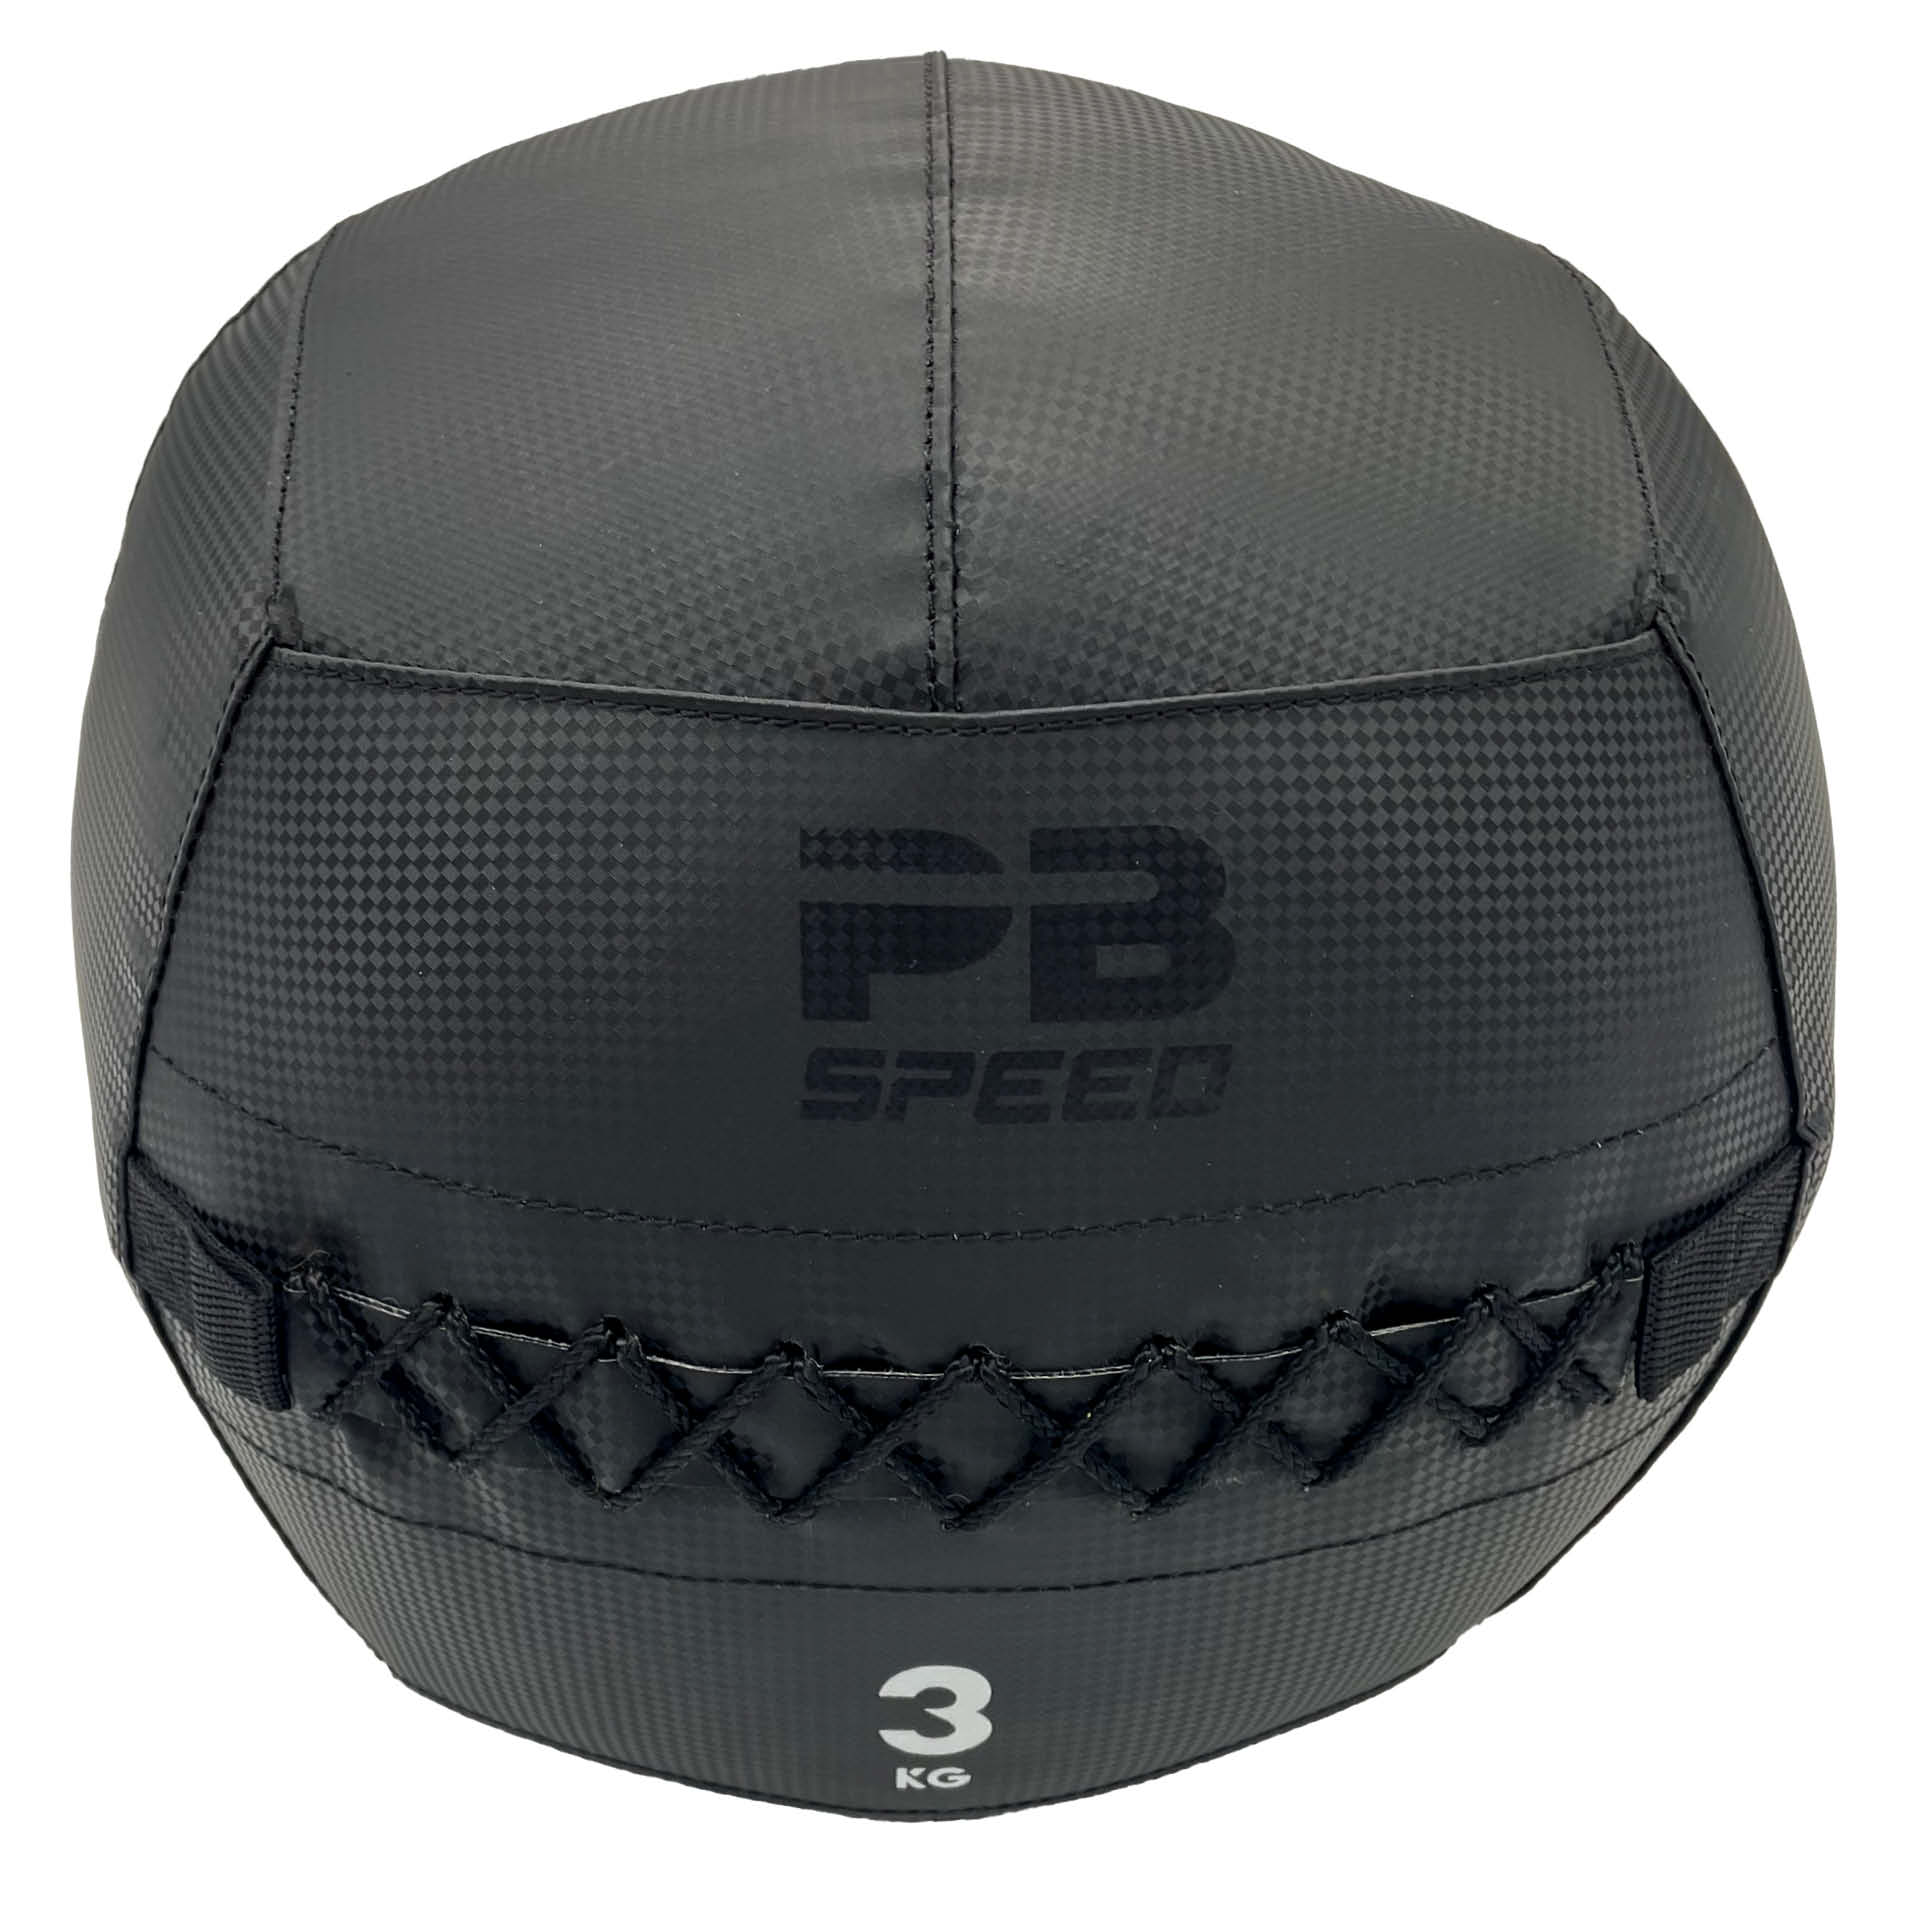 PB Speed Soft Medizinball 3 kg